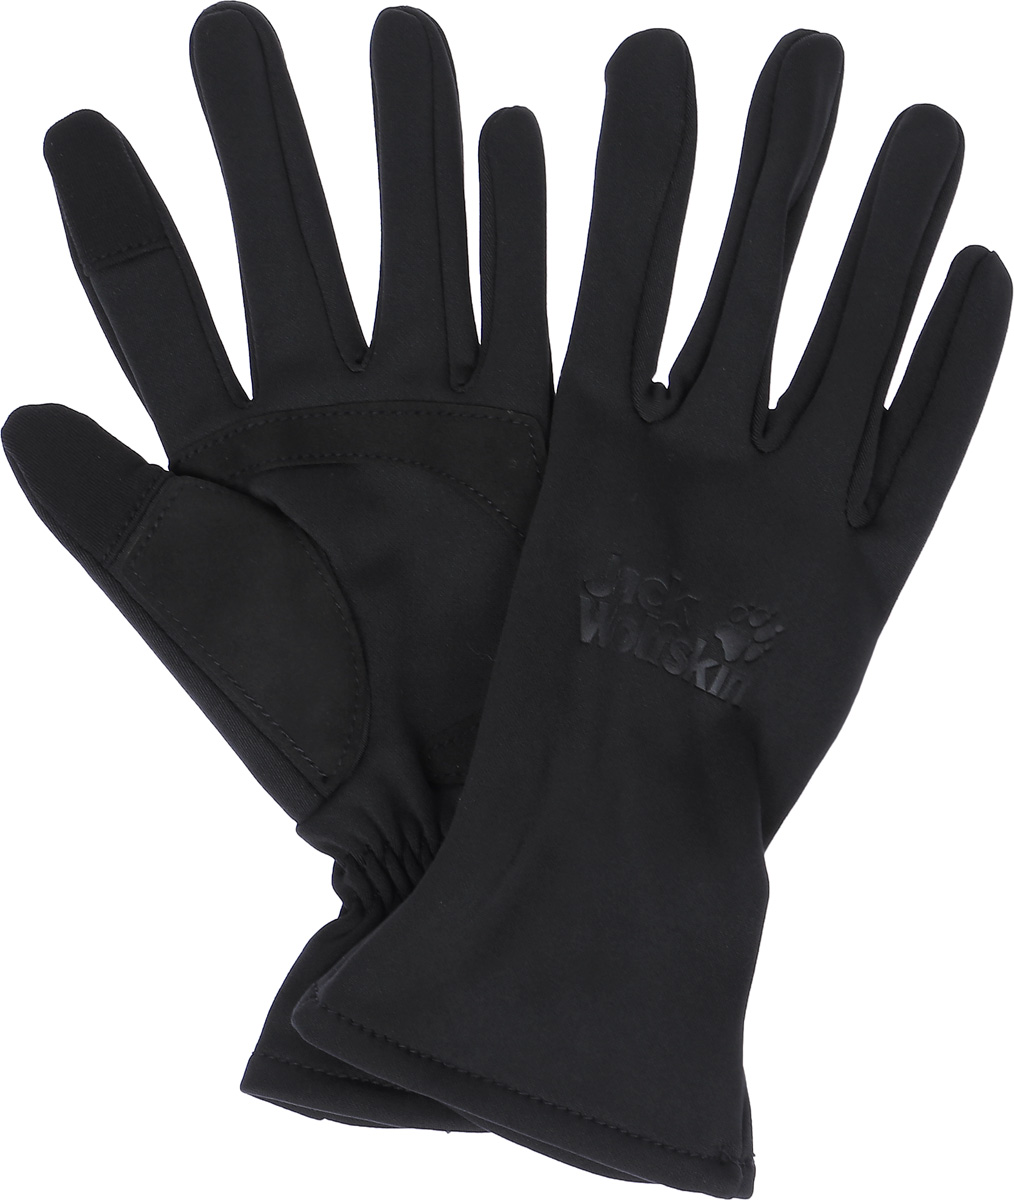 Перчатки Jack Wolfskin Dynamic Touch Glove, цвет: черный. 1903152-6000. Размер M (8/8,5)